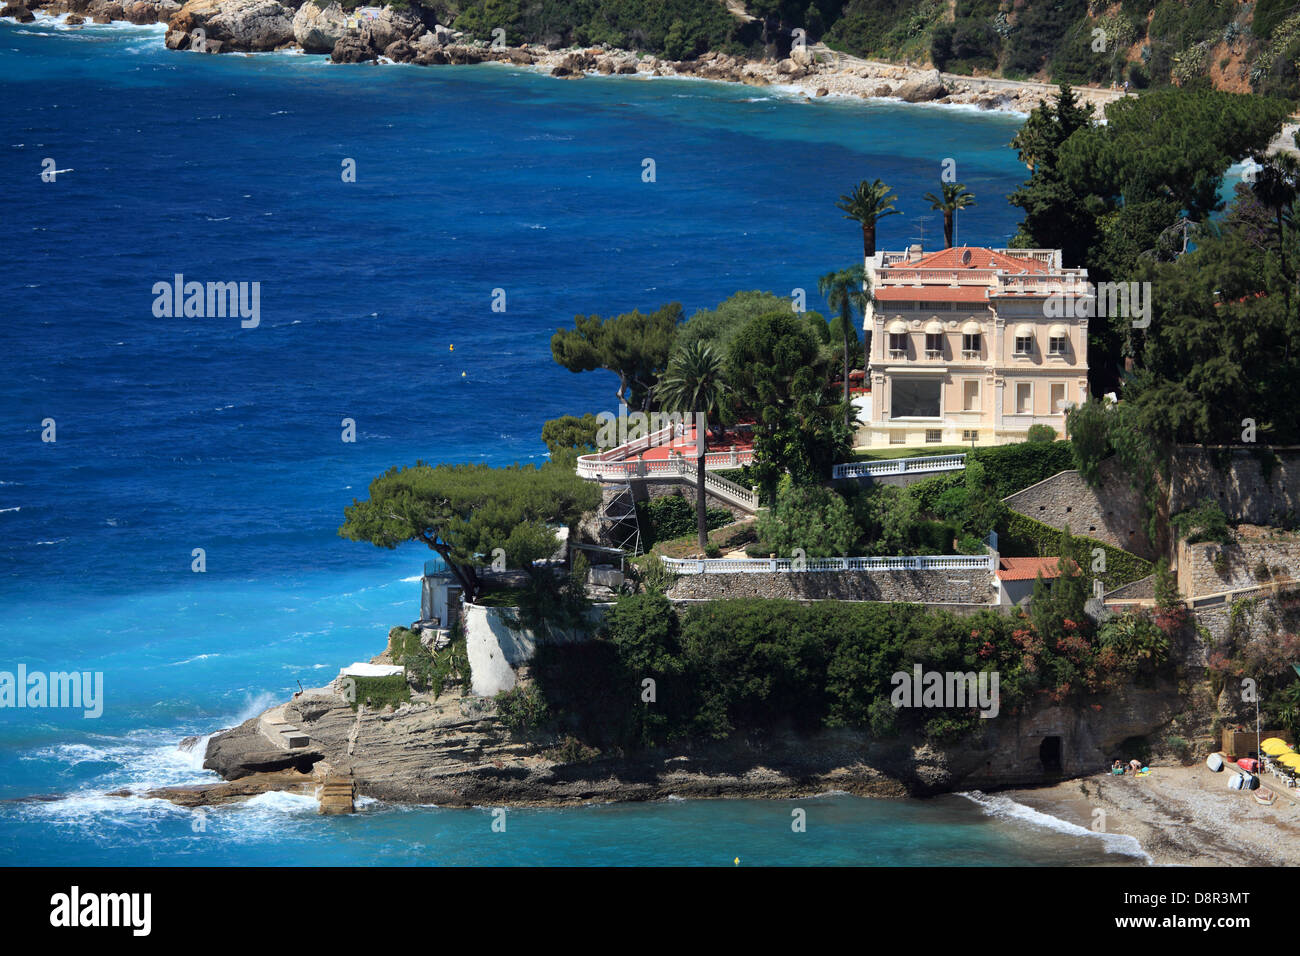 Coco Chanel's French Riviera Villa for Sale at $50 Million